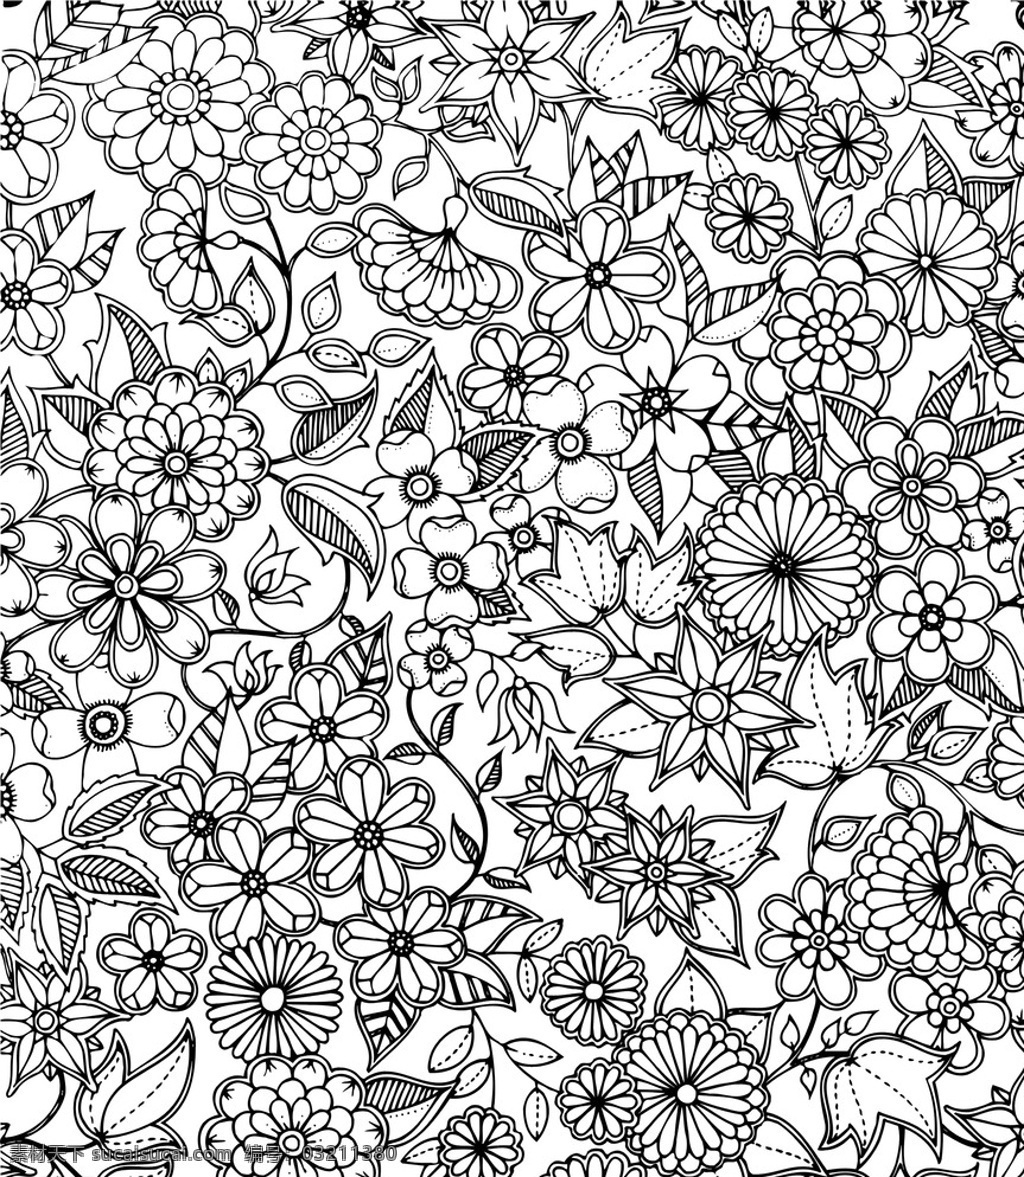 黑白 花朵 复杂 剪纸 底纹 单色 矢量 植株 底纹边框 背景底纹 黑白花纹样式 白色